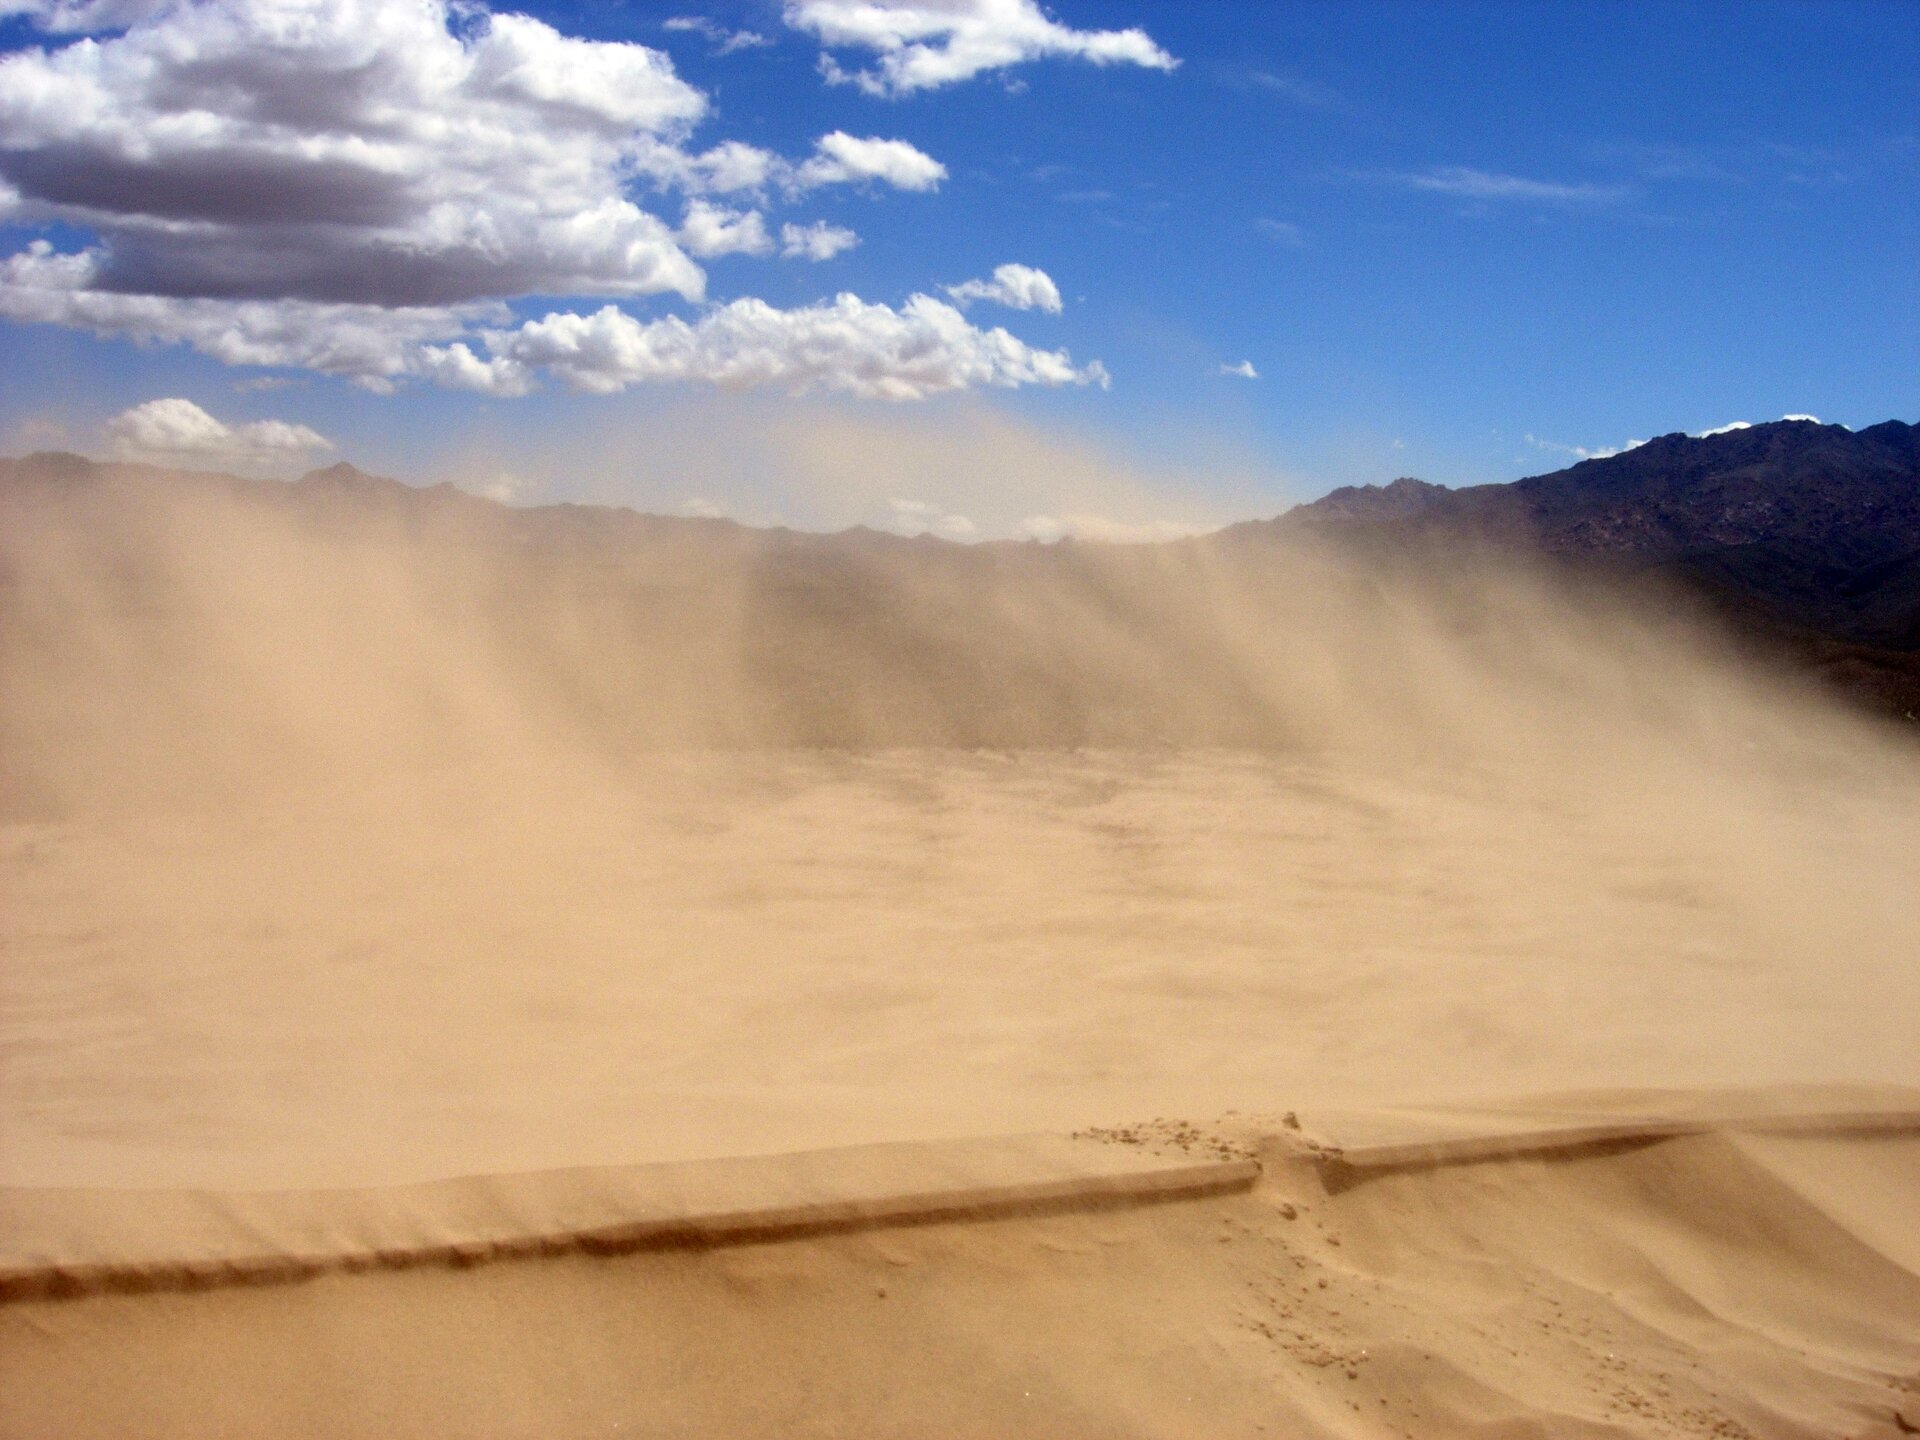 Zdjęcie ukazuje niewysokie piaszczyste zbocze. Unosi się nad nim piasek wywiewany przez wiatr. W tle widać fragment góry.  